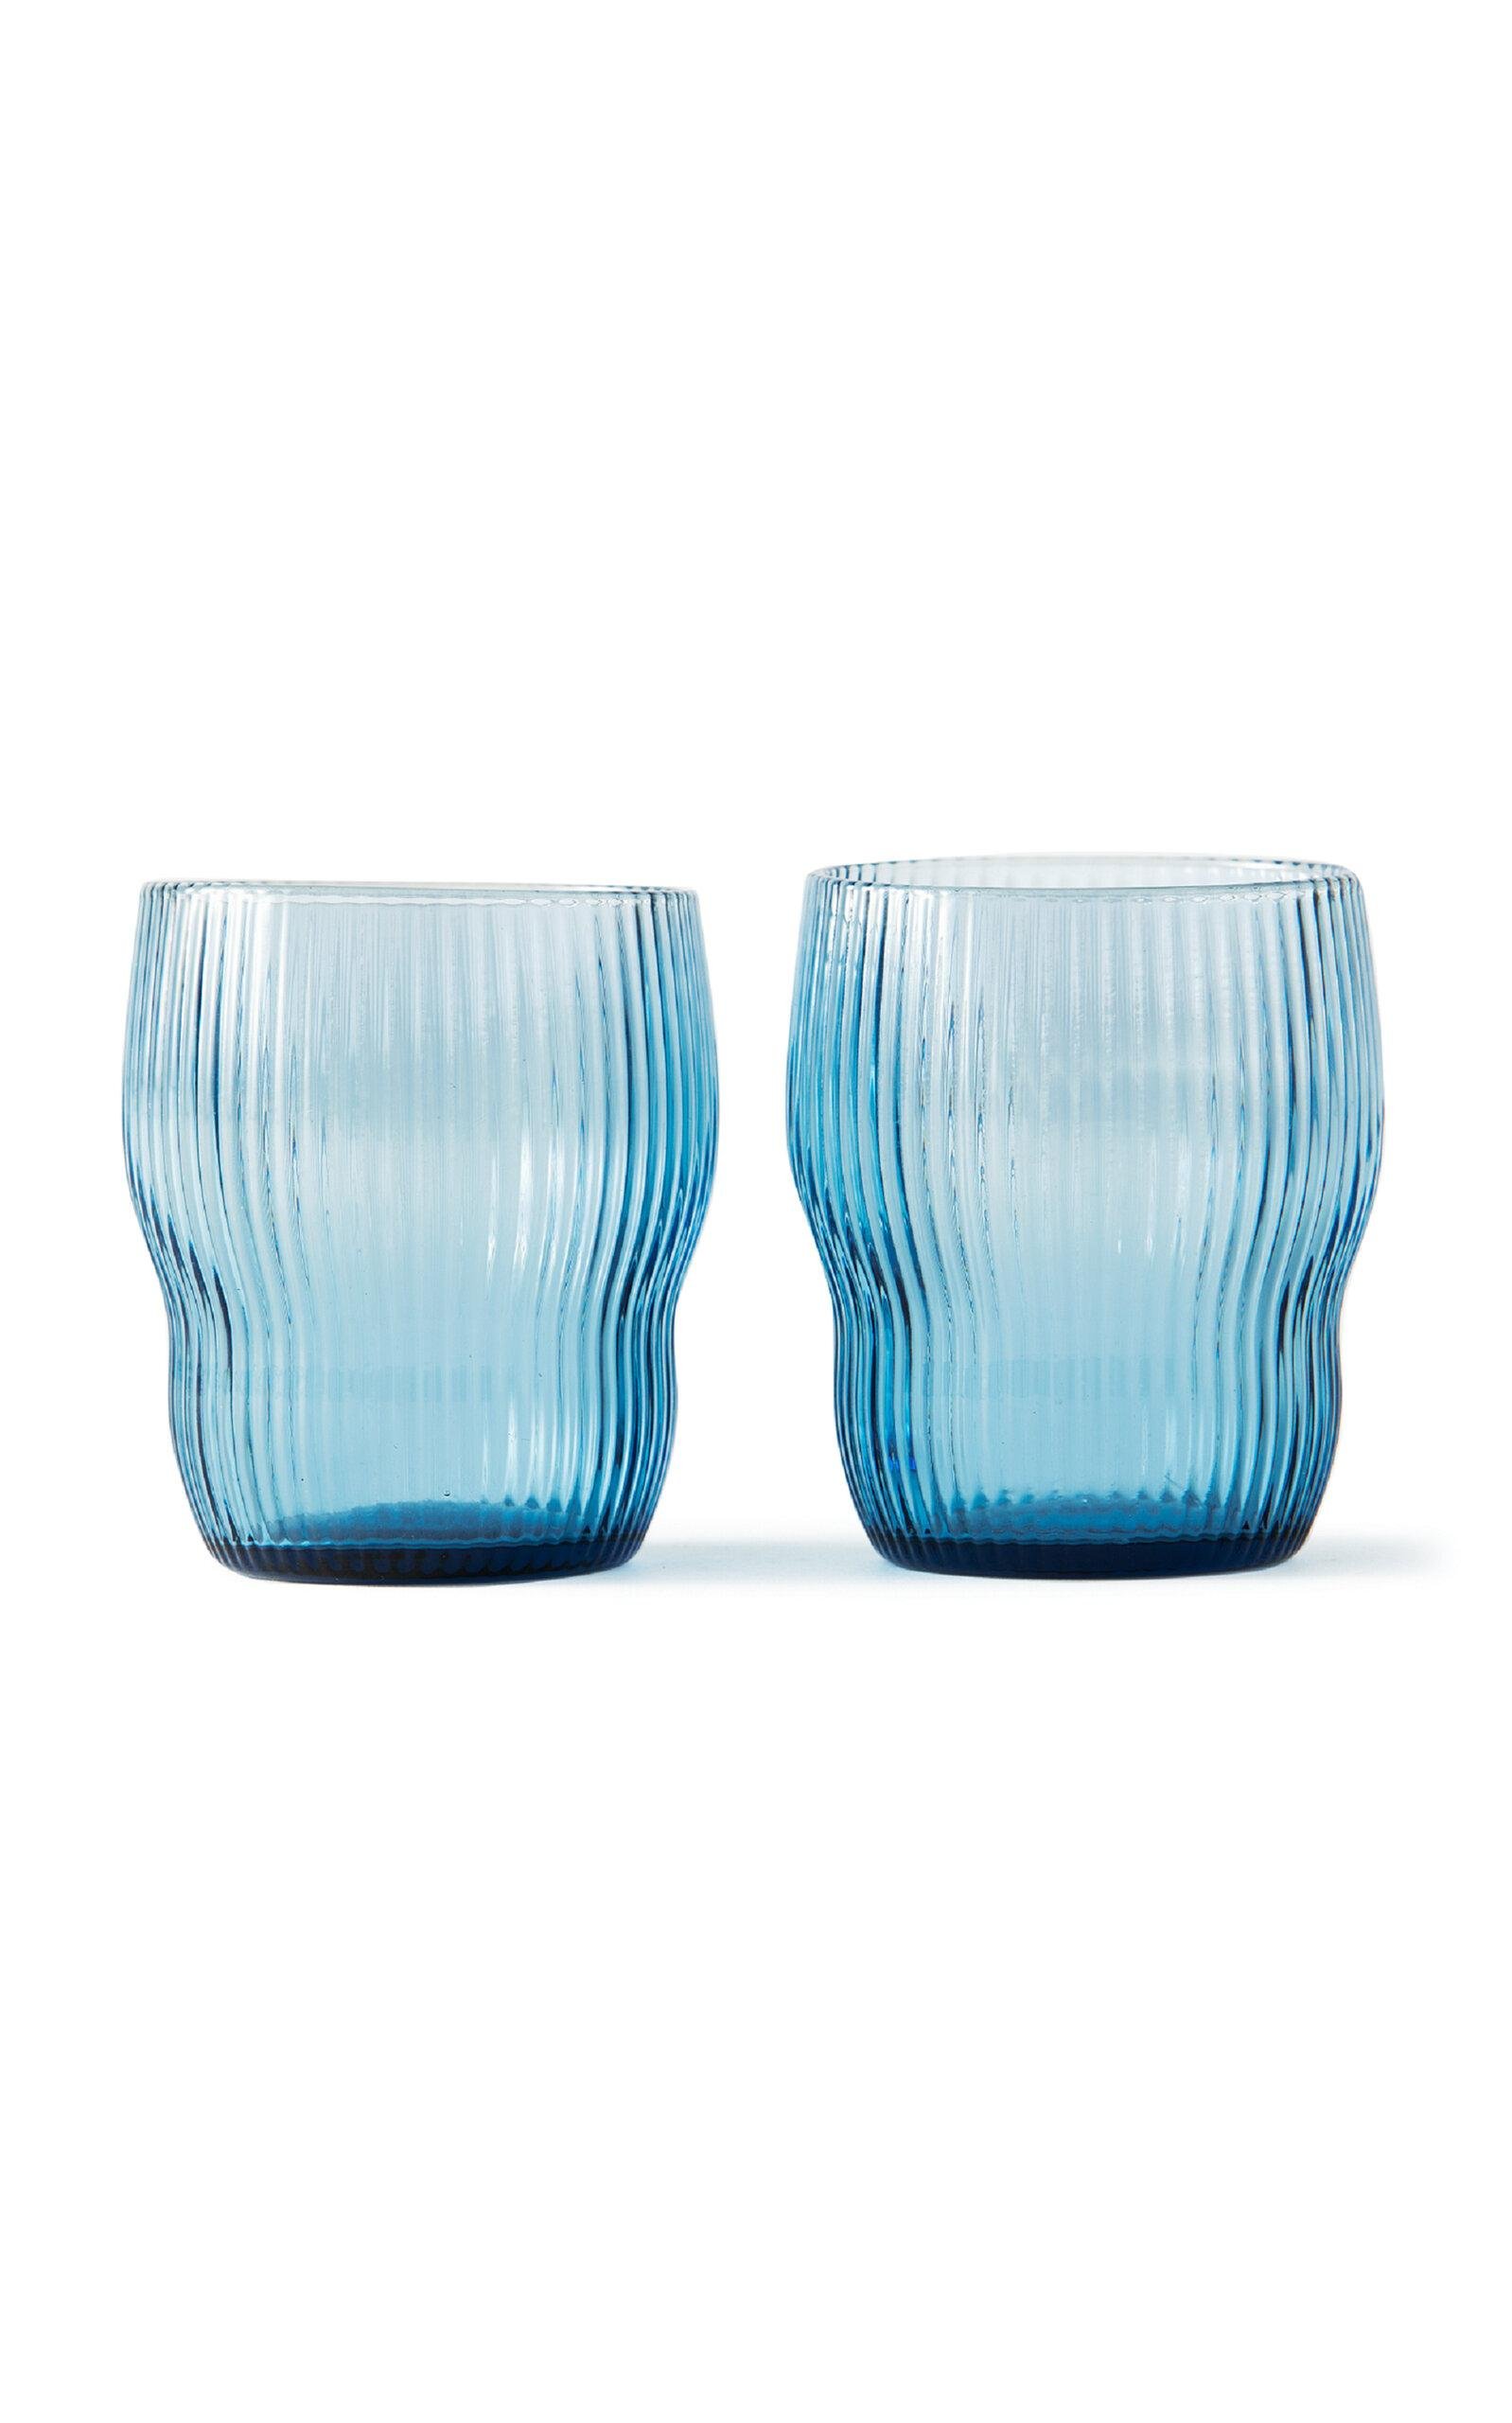 POLSPOTTEN - Set-of-Two Pum Glass Tumblers - Light Blue - Moda Operandi by POLSPOTTEN